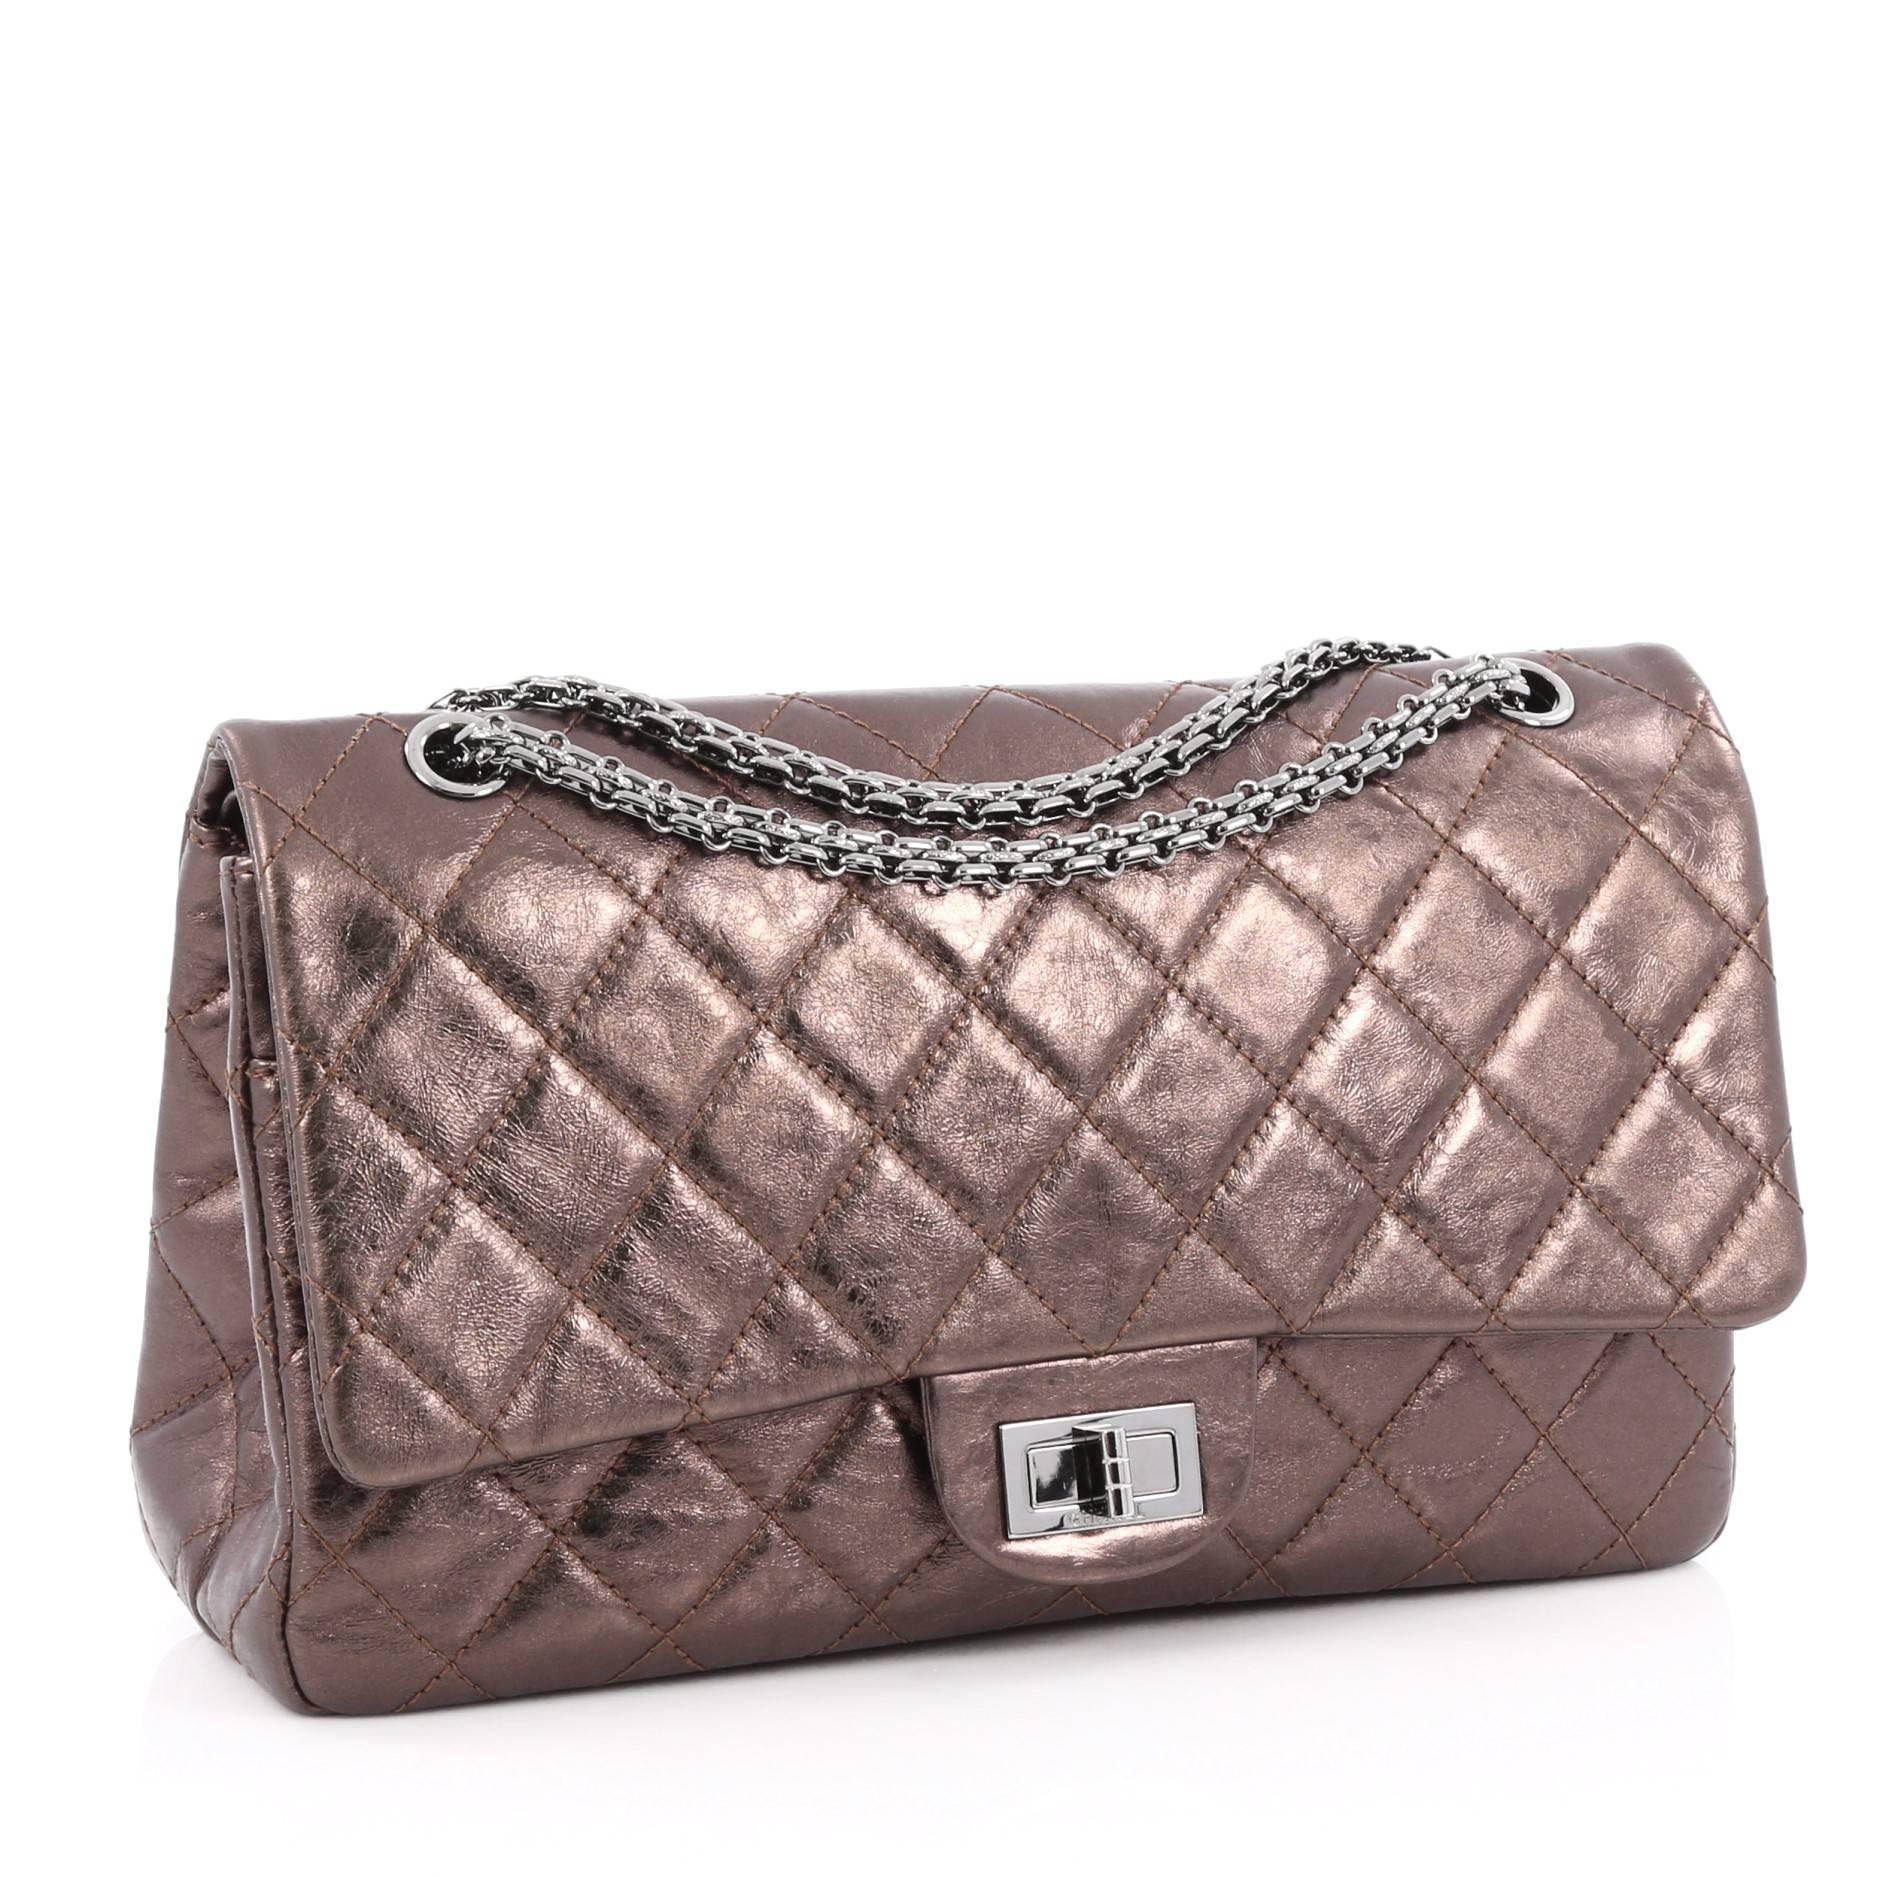 Black Chanel Reissue 2.55 Handbag Metallic Quilted Aged Calfskin 227